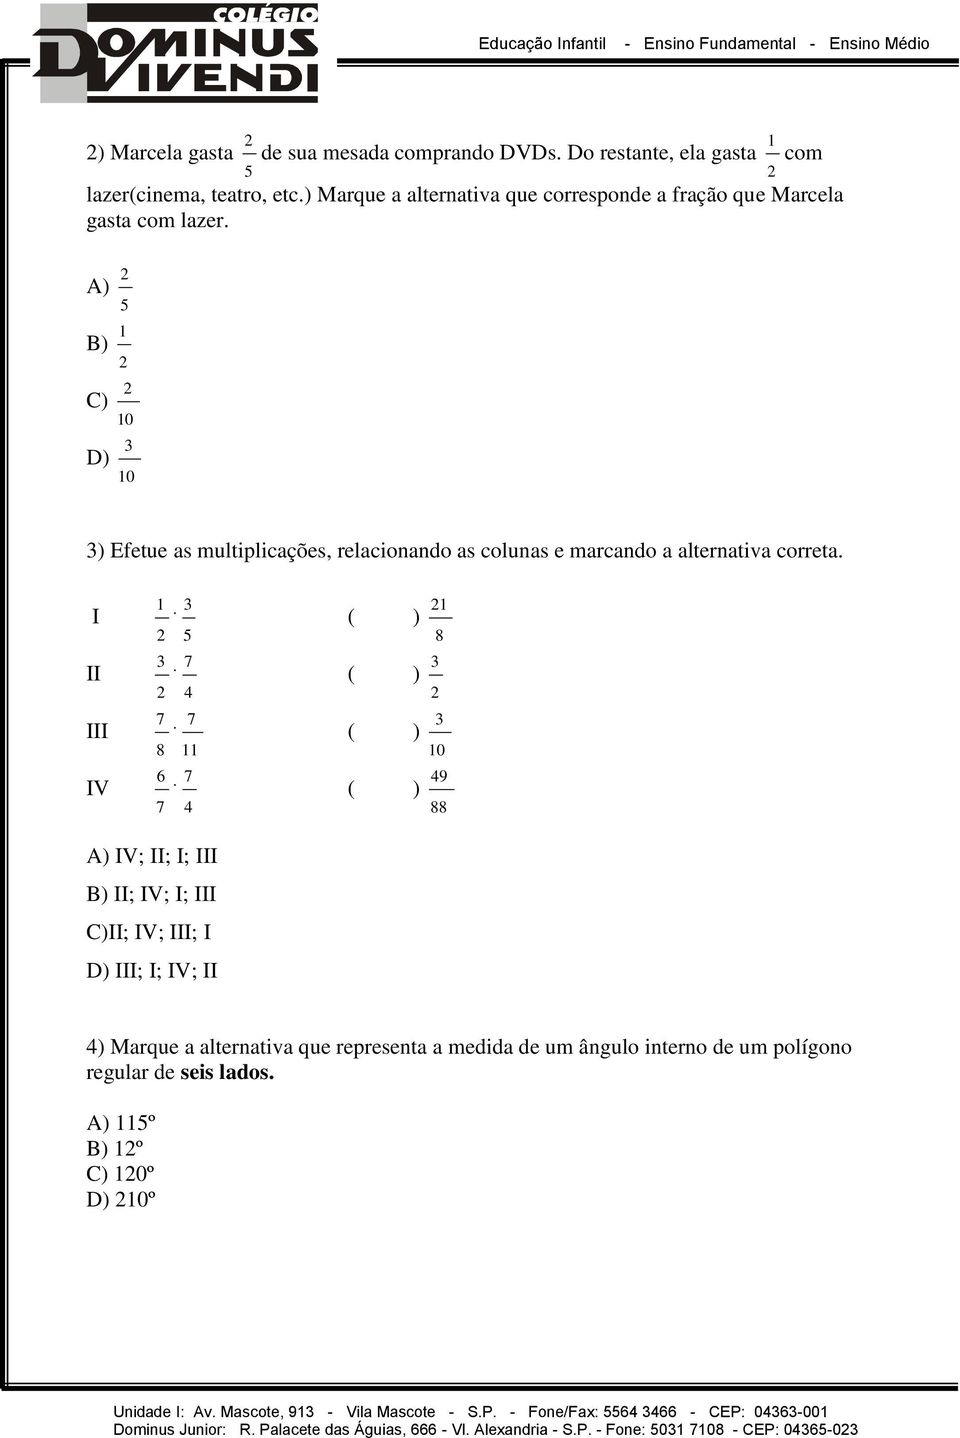 A) B) C) D) ) Efetue as multiplicações, relacionando as colunas e marcando a alternativa correta.